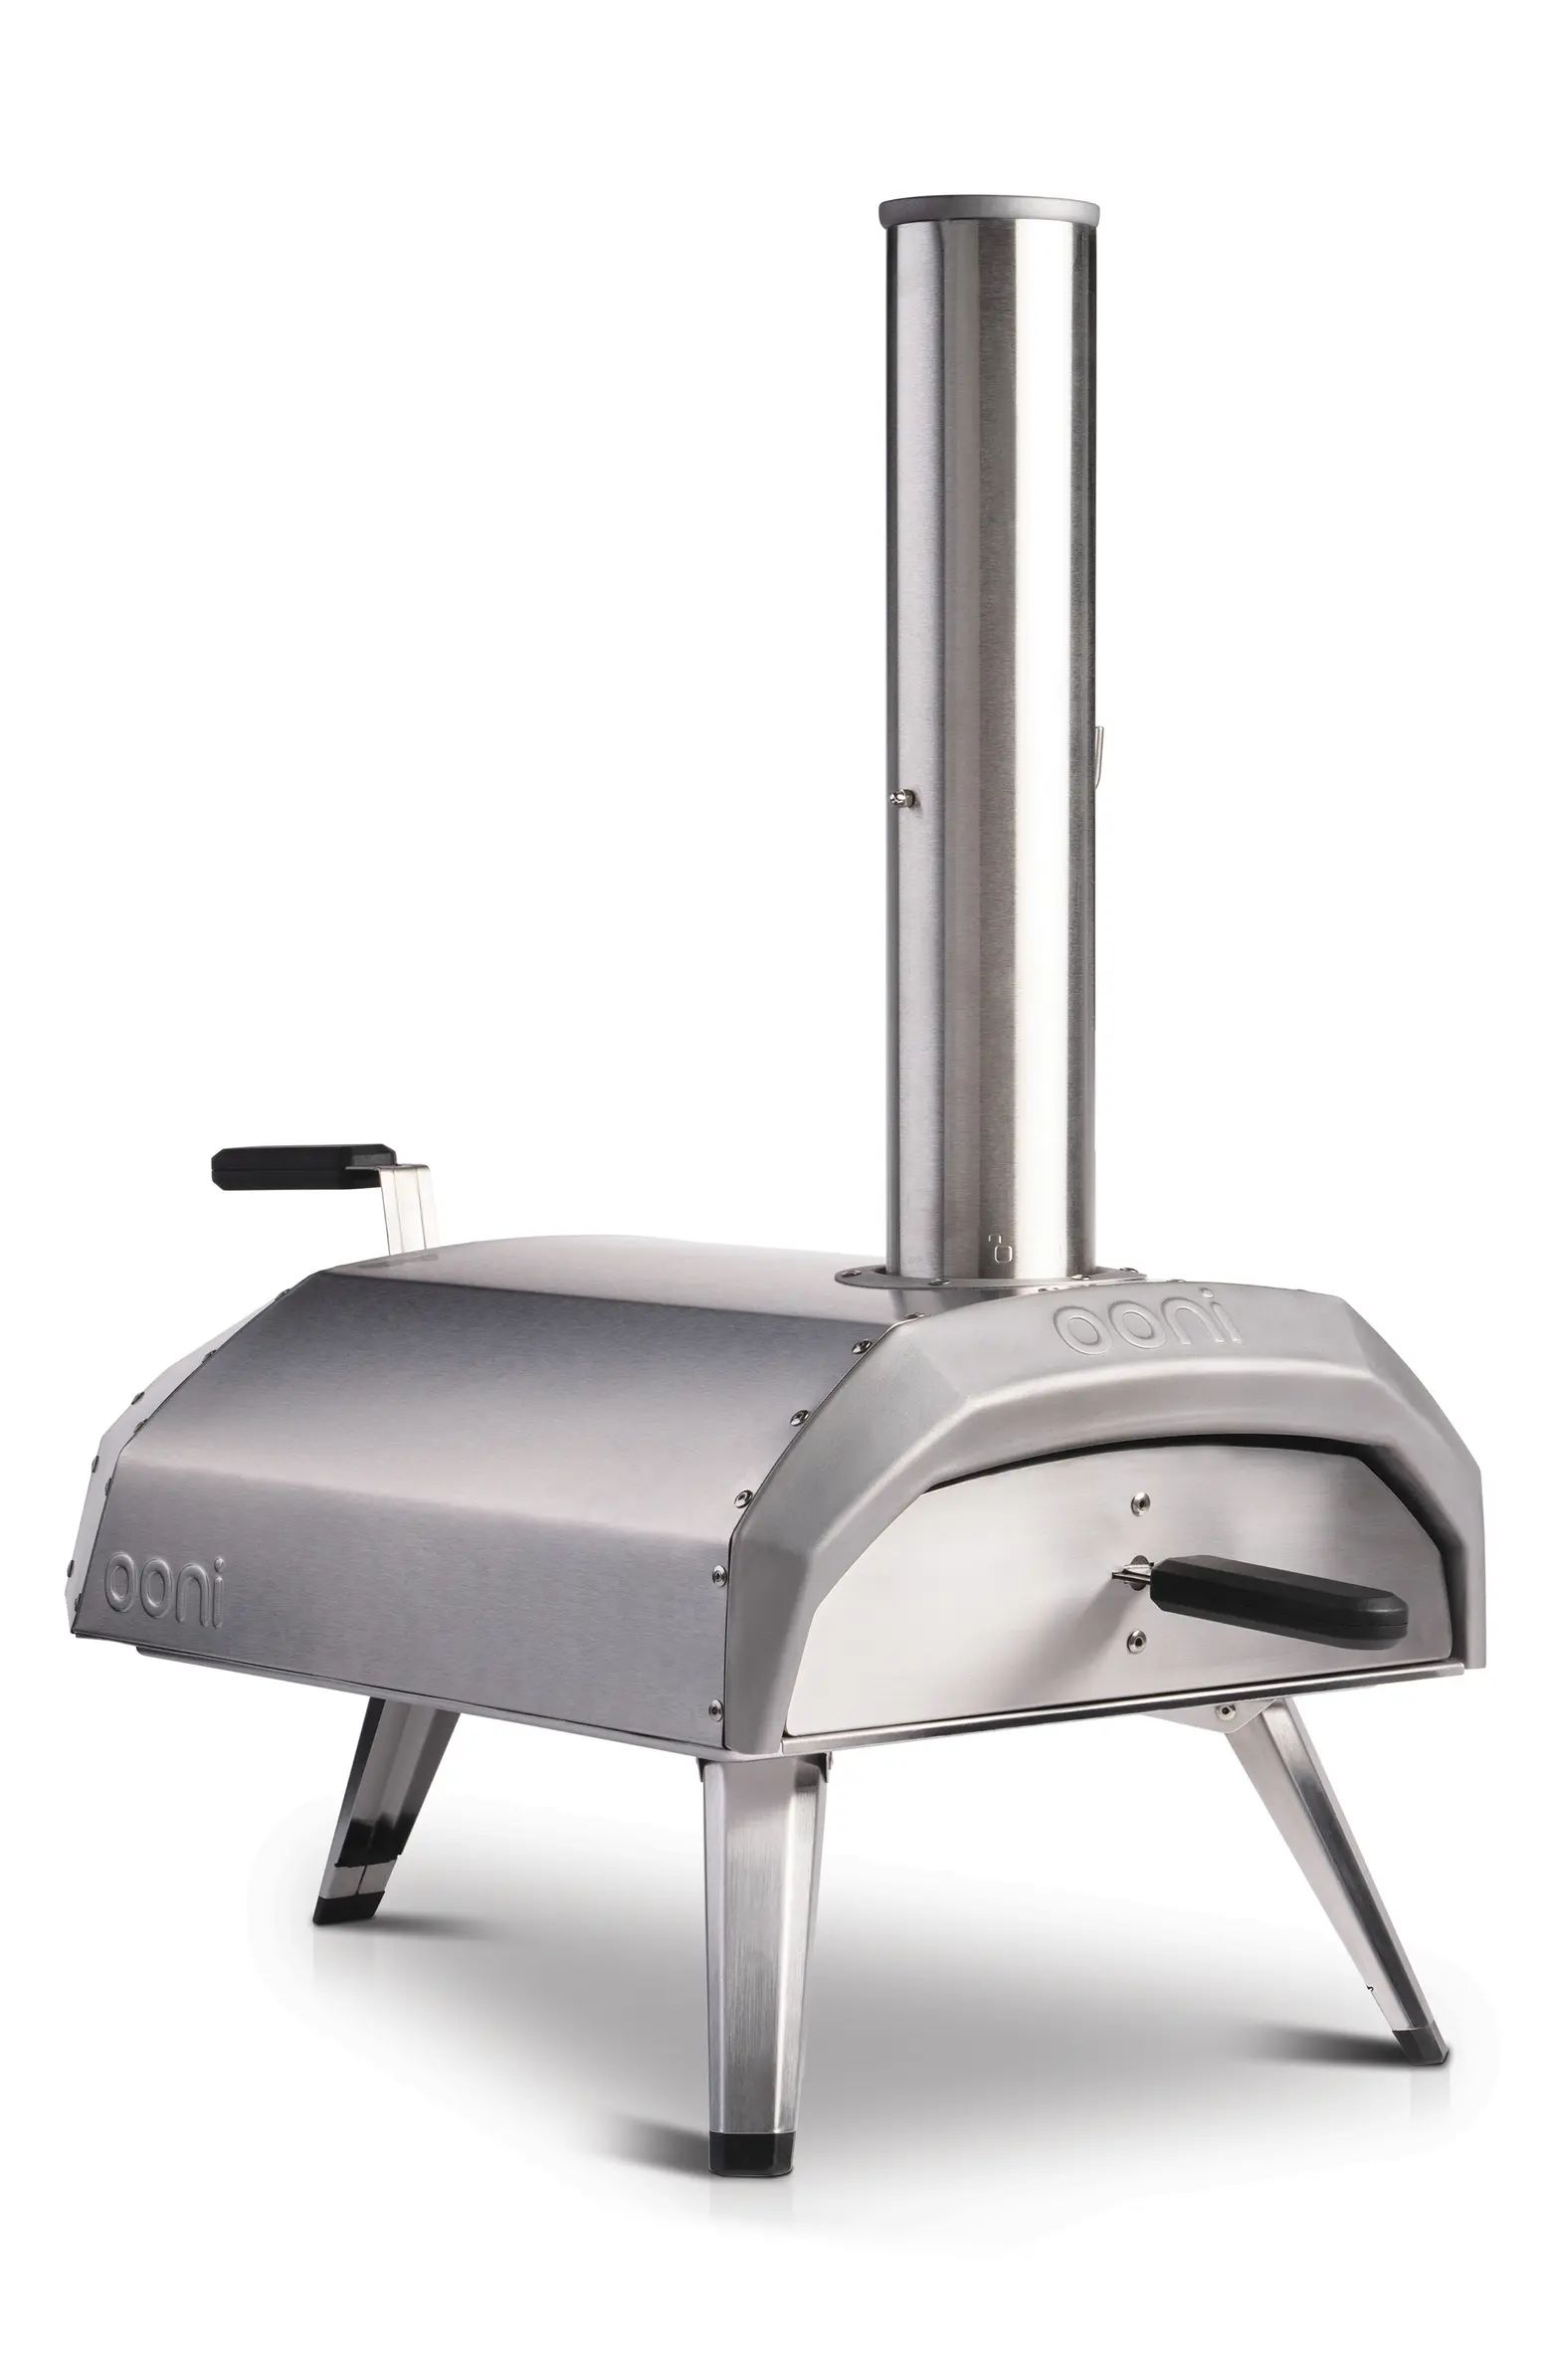 Gas Burner for Karu 12 Pizza Oven | Nordstrom